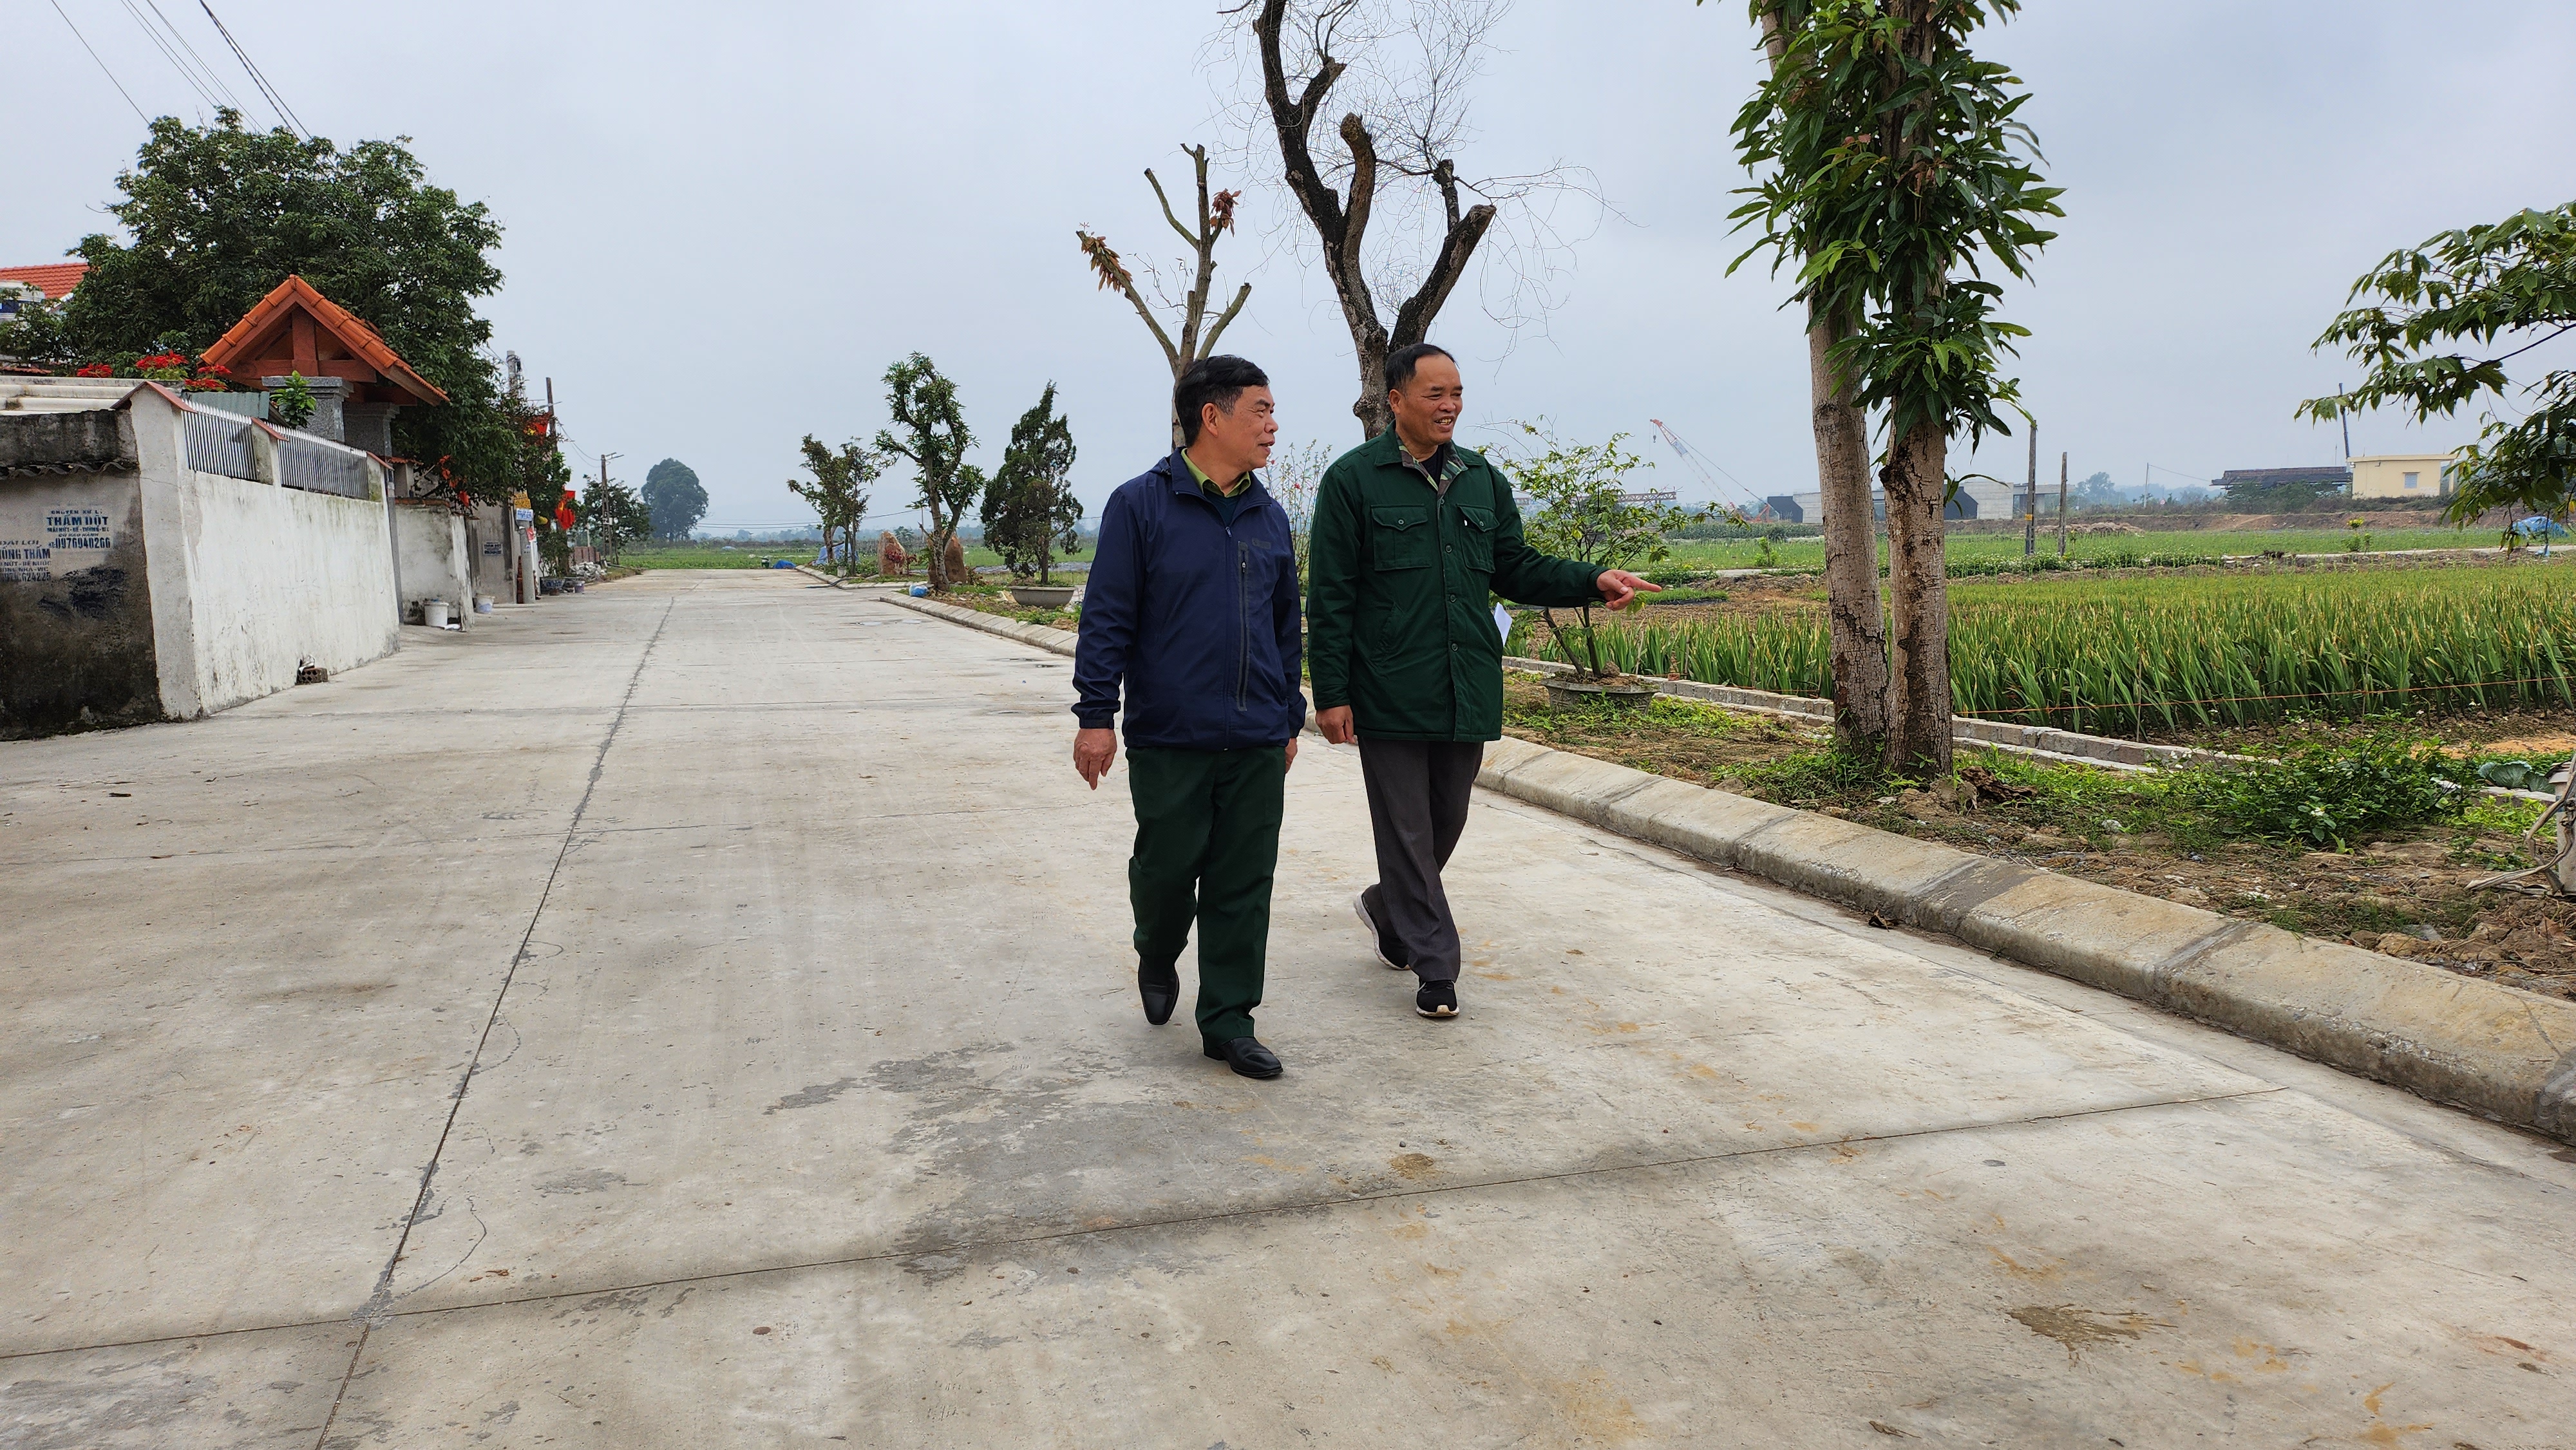 Đồng chí Nguyễn Mạnh Ngát (phải) phấn khởi chia sẻ về tuyến đường nội đồng trong khu phố được xây sửa rộng đẹp nhờ hưởng ứng tích cực của nhân dân.